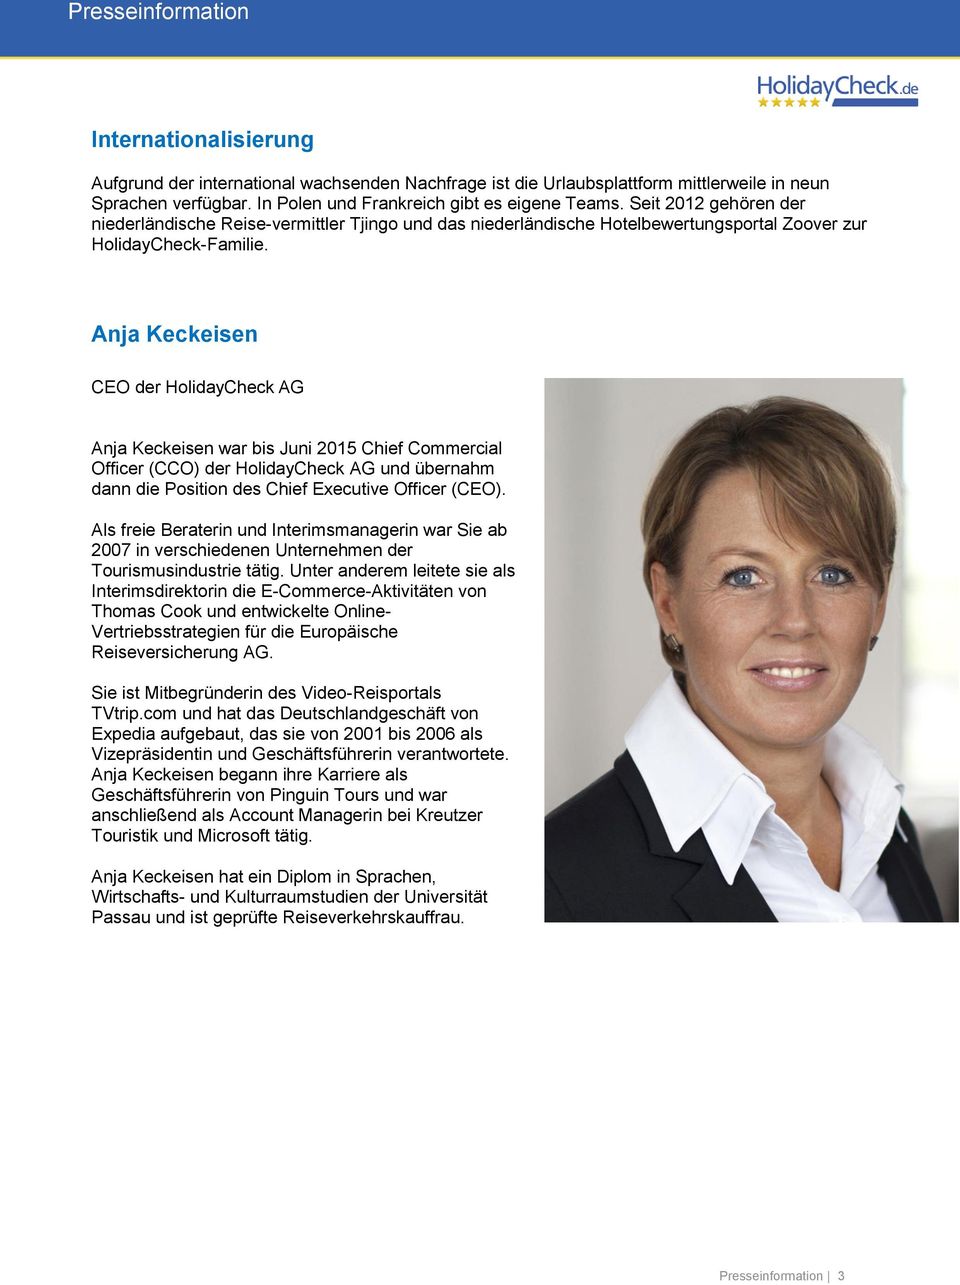 Anja Keckeisen CEO der HolidayCheck AG Anja Keckeisen war bis Juni 2015 Chief Commercial Officer (CCO) der HolidayCheck AG und übernahm dann die Position des Chief Executive Officer (CEO).